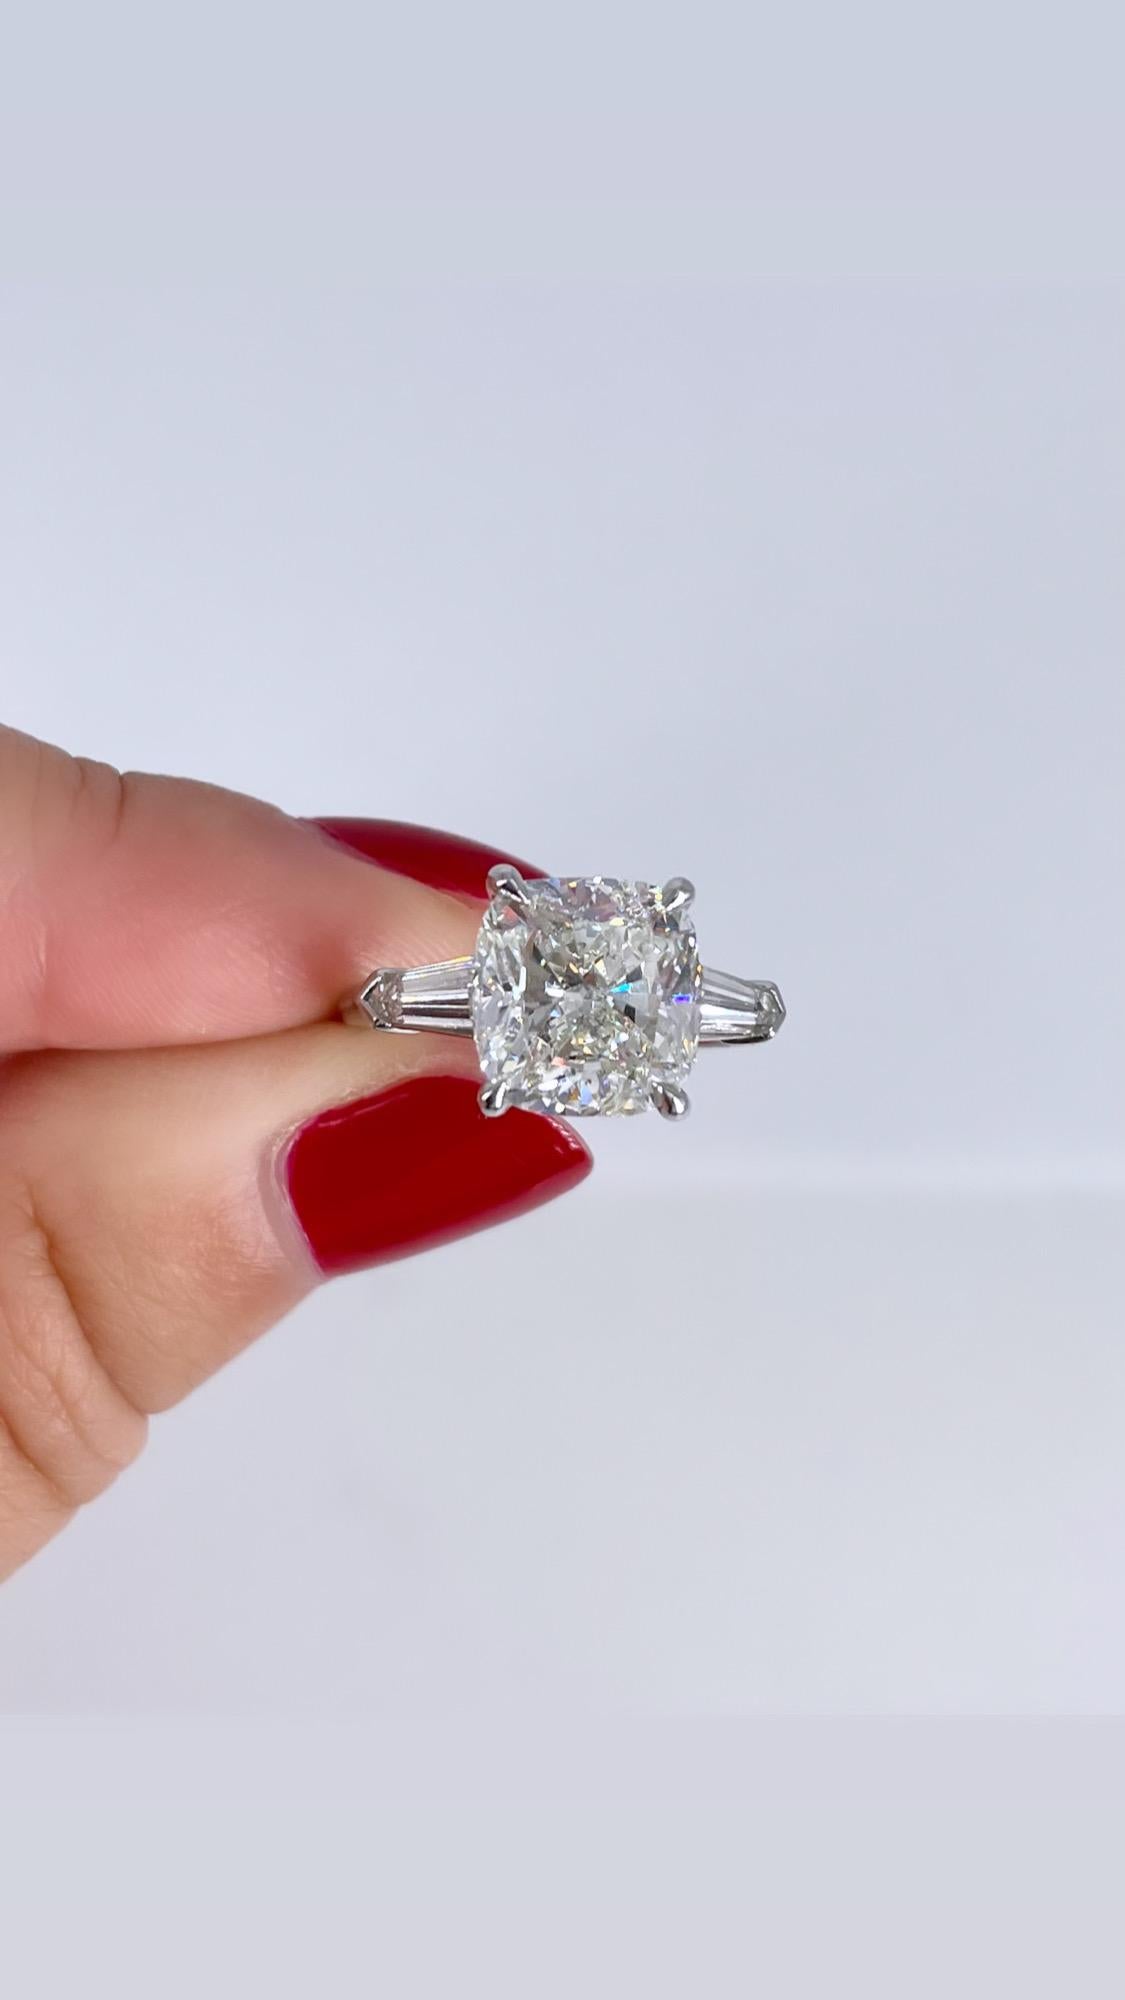 Dieser elegante Verlobungsring ist ein einzigartiges Beispiel für einen zeitlosen Stil. Es ist selten, dass man einen kissenförmigen Diamanten mit spitz zulaufenden Baguettes sieht, und wir lieben diese Kombination! Der Ring ist mit einem 4,64 Karat